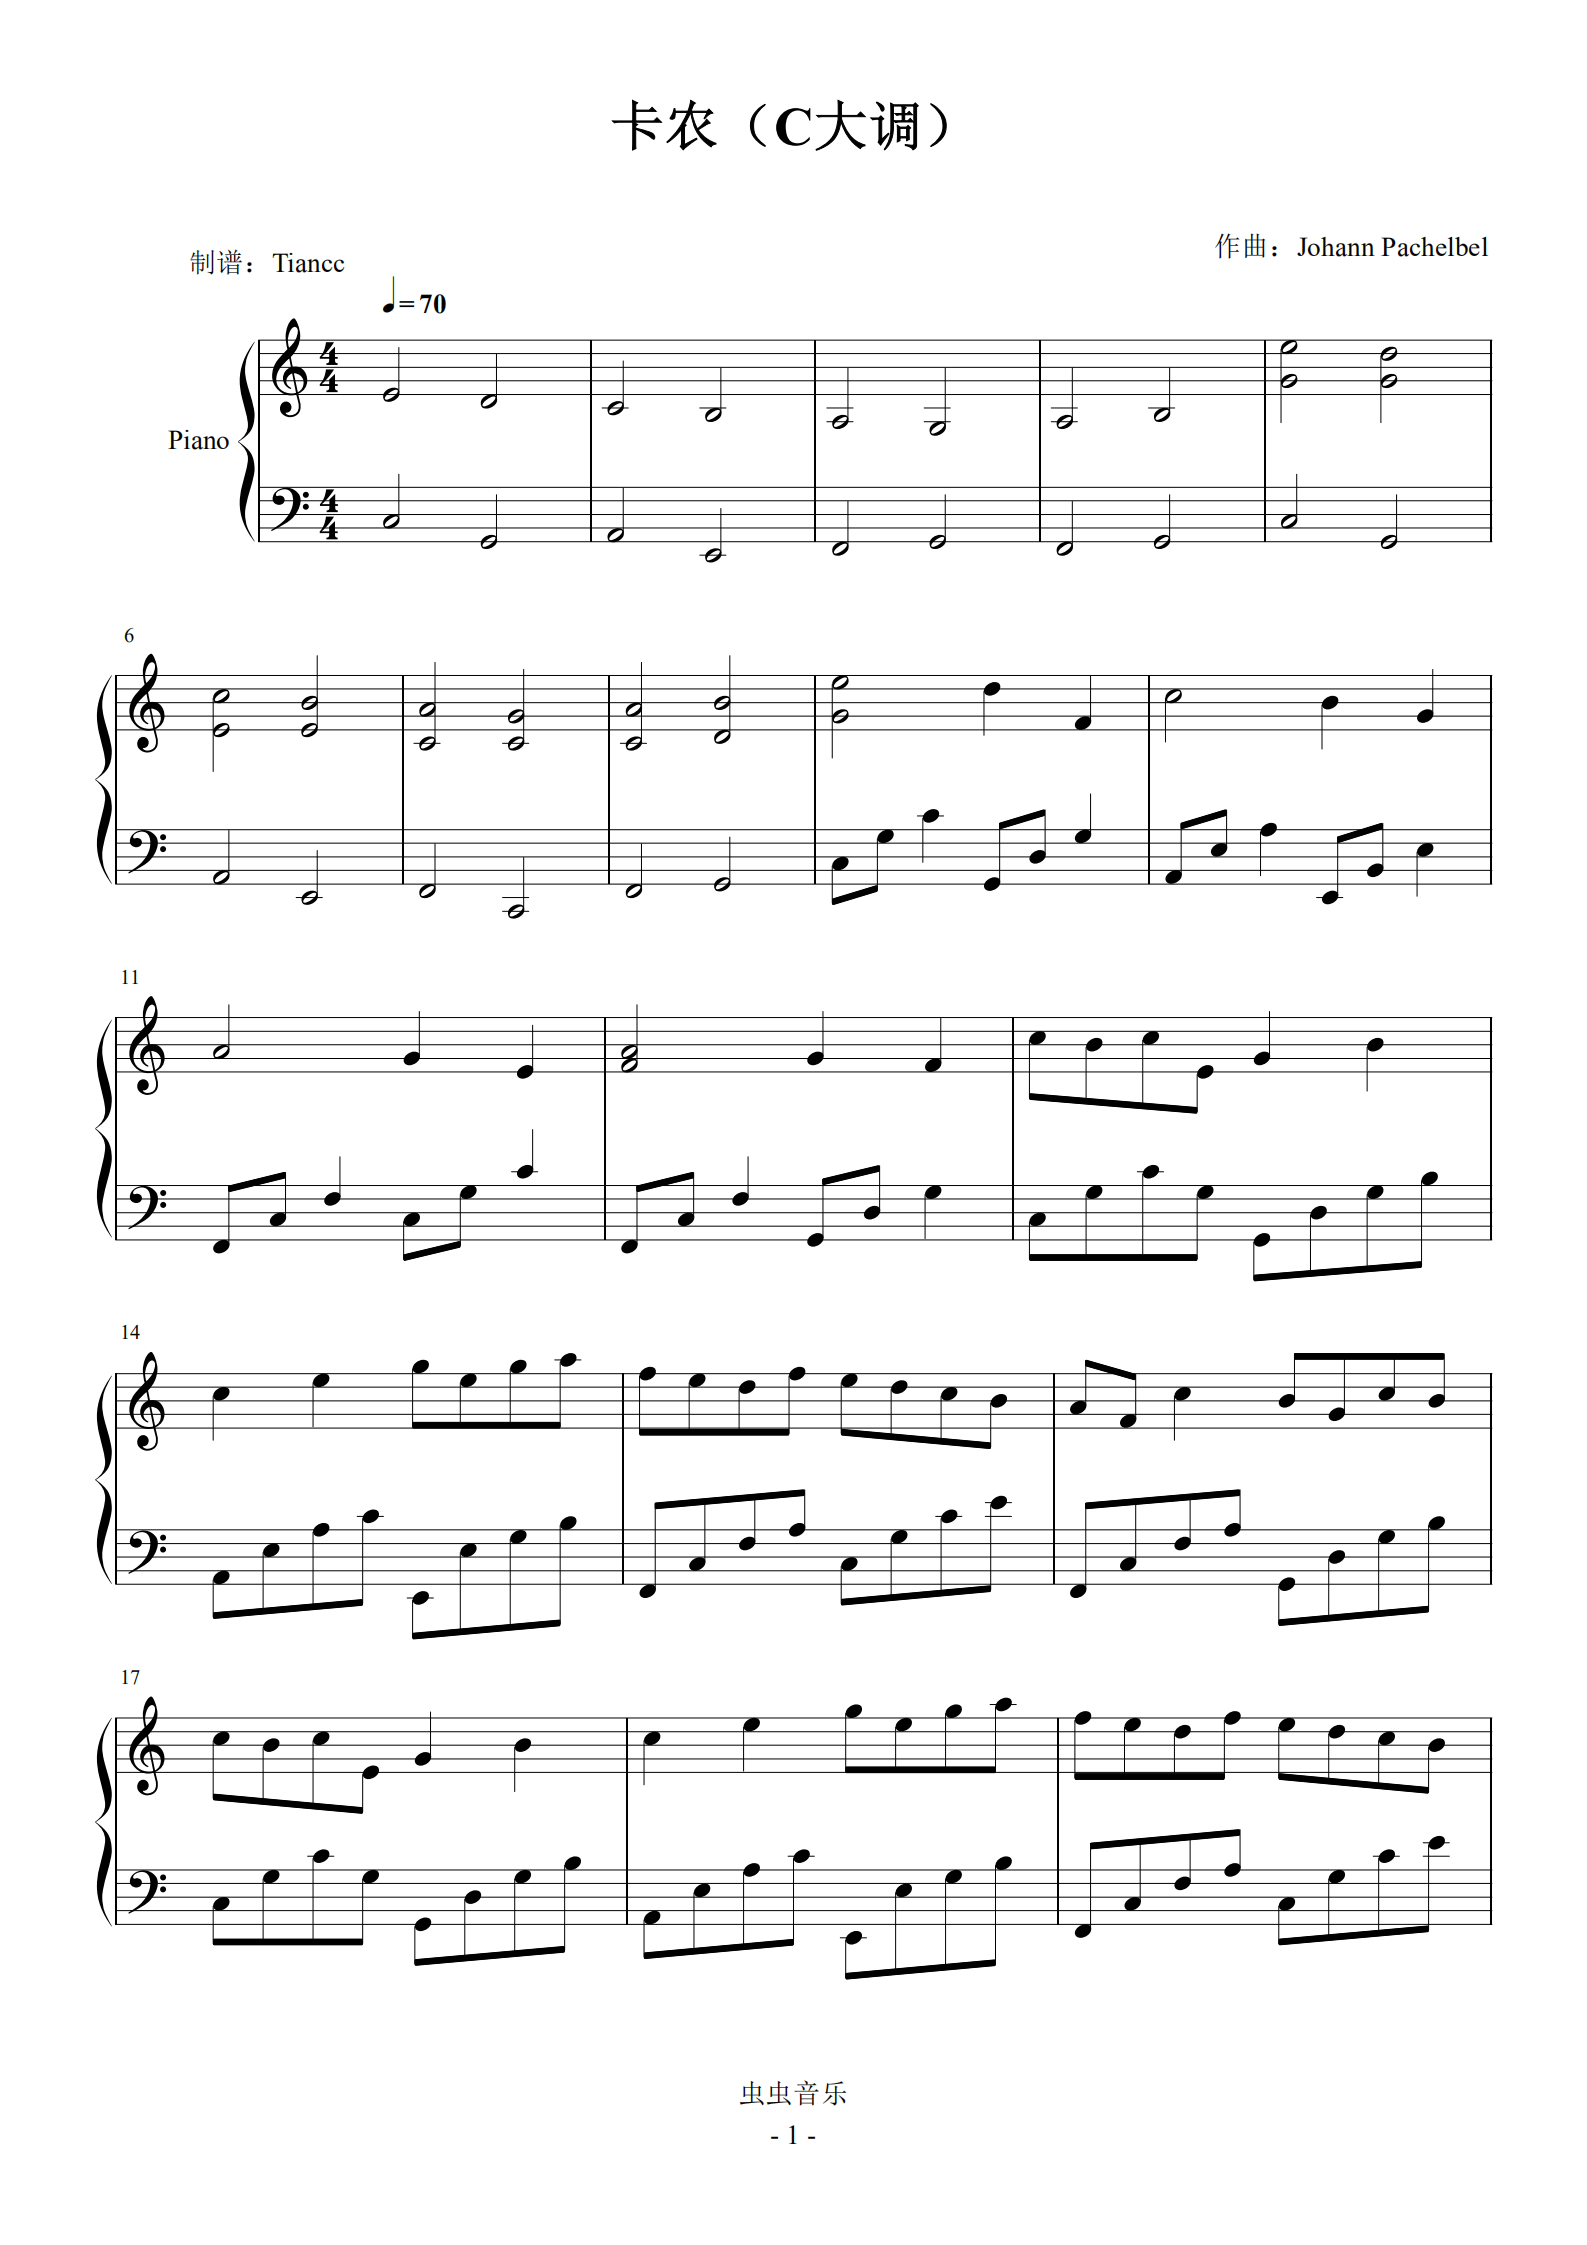 《卡农c大调》完美可弹优化版,599学完难度钢琴谱